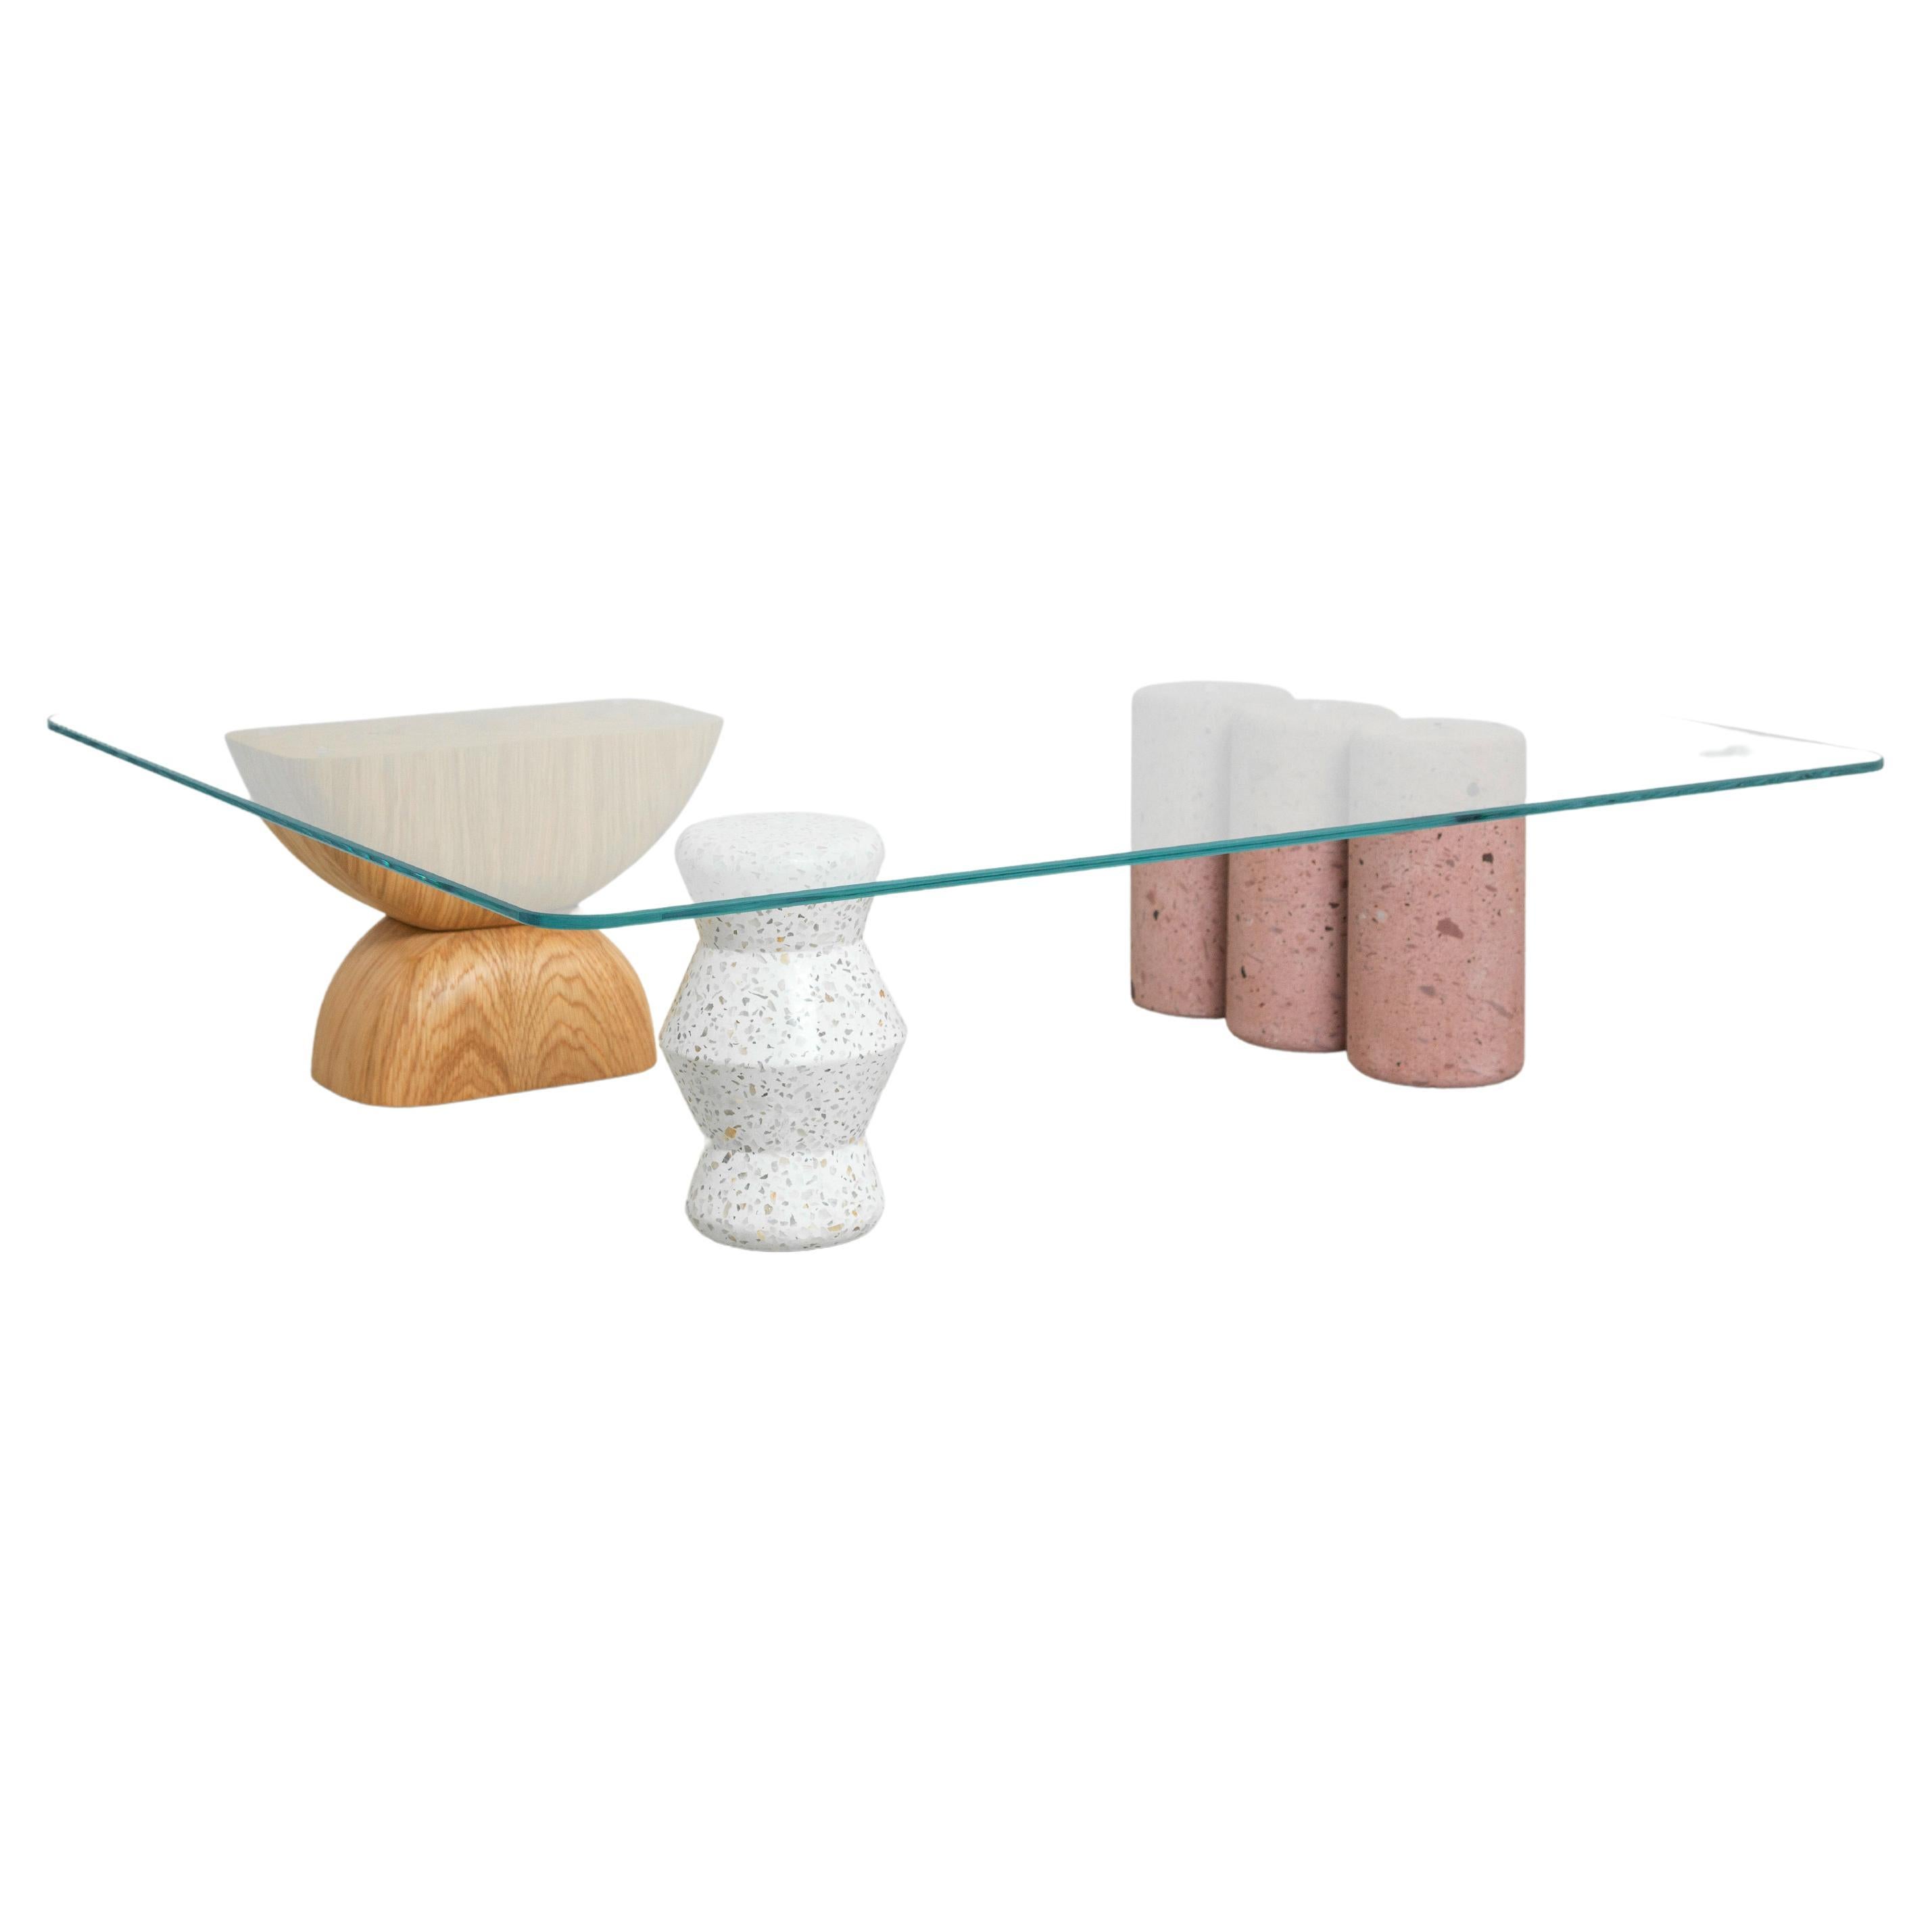 Der Tisch Rosedal ist ein skulpturaler Couchtisch, der aus drei Teilen besteht. Eine handgeformte in massiven Eichen Finish Rubio Monocoat Holz, das andere ist weiß poliert Terrazzo mit grauen Funken und die letzten drei Stücke seled rosa cantera